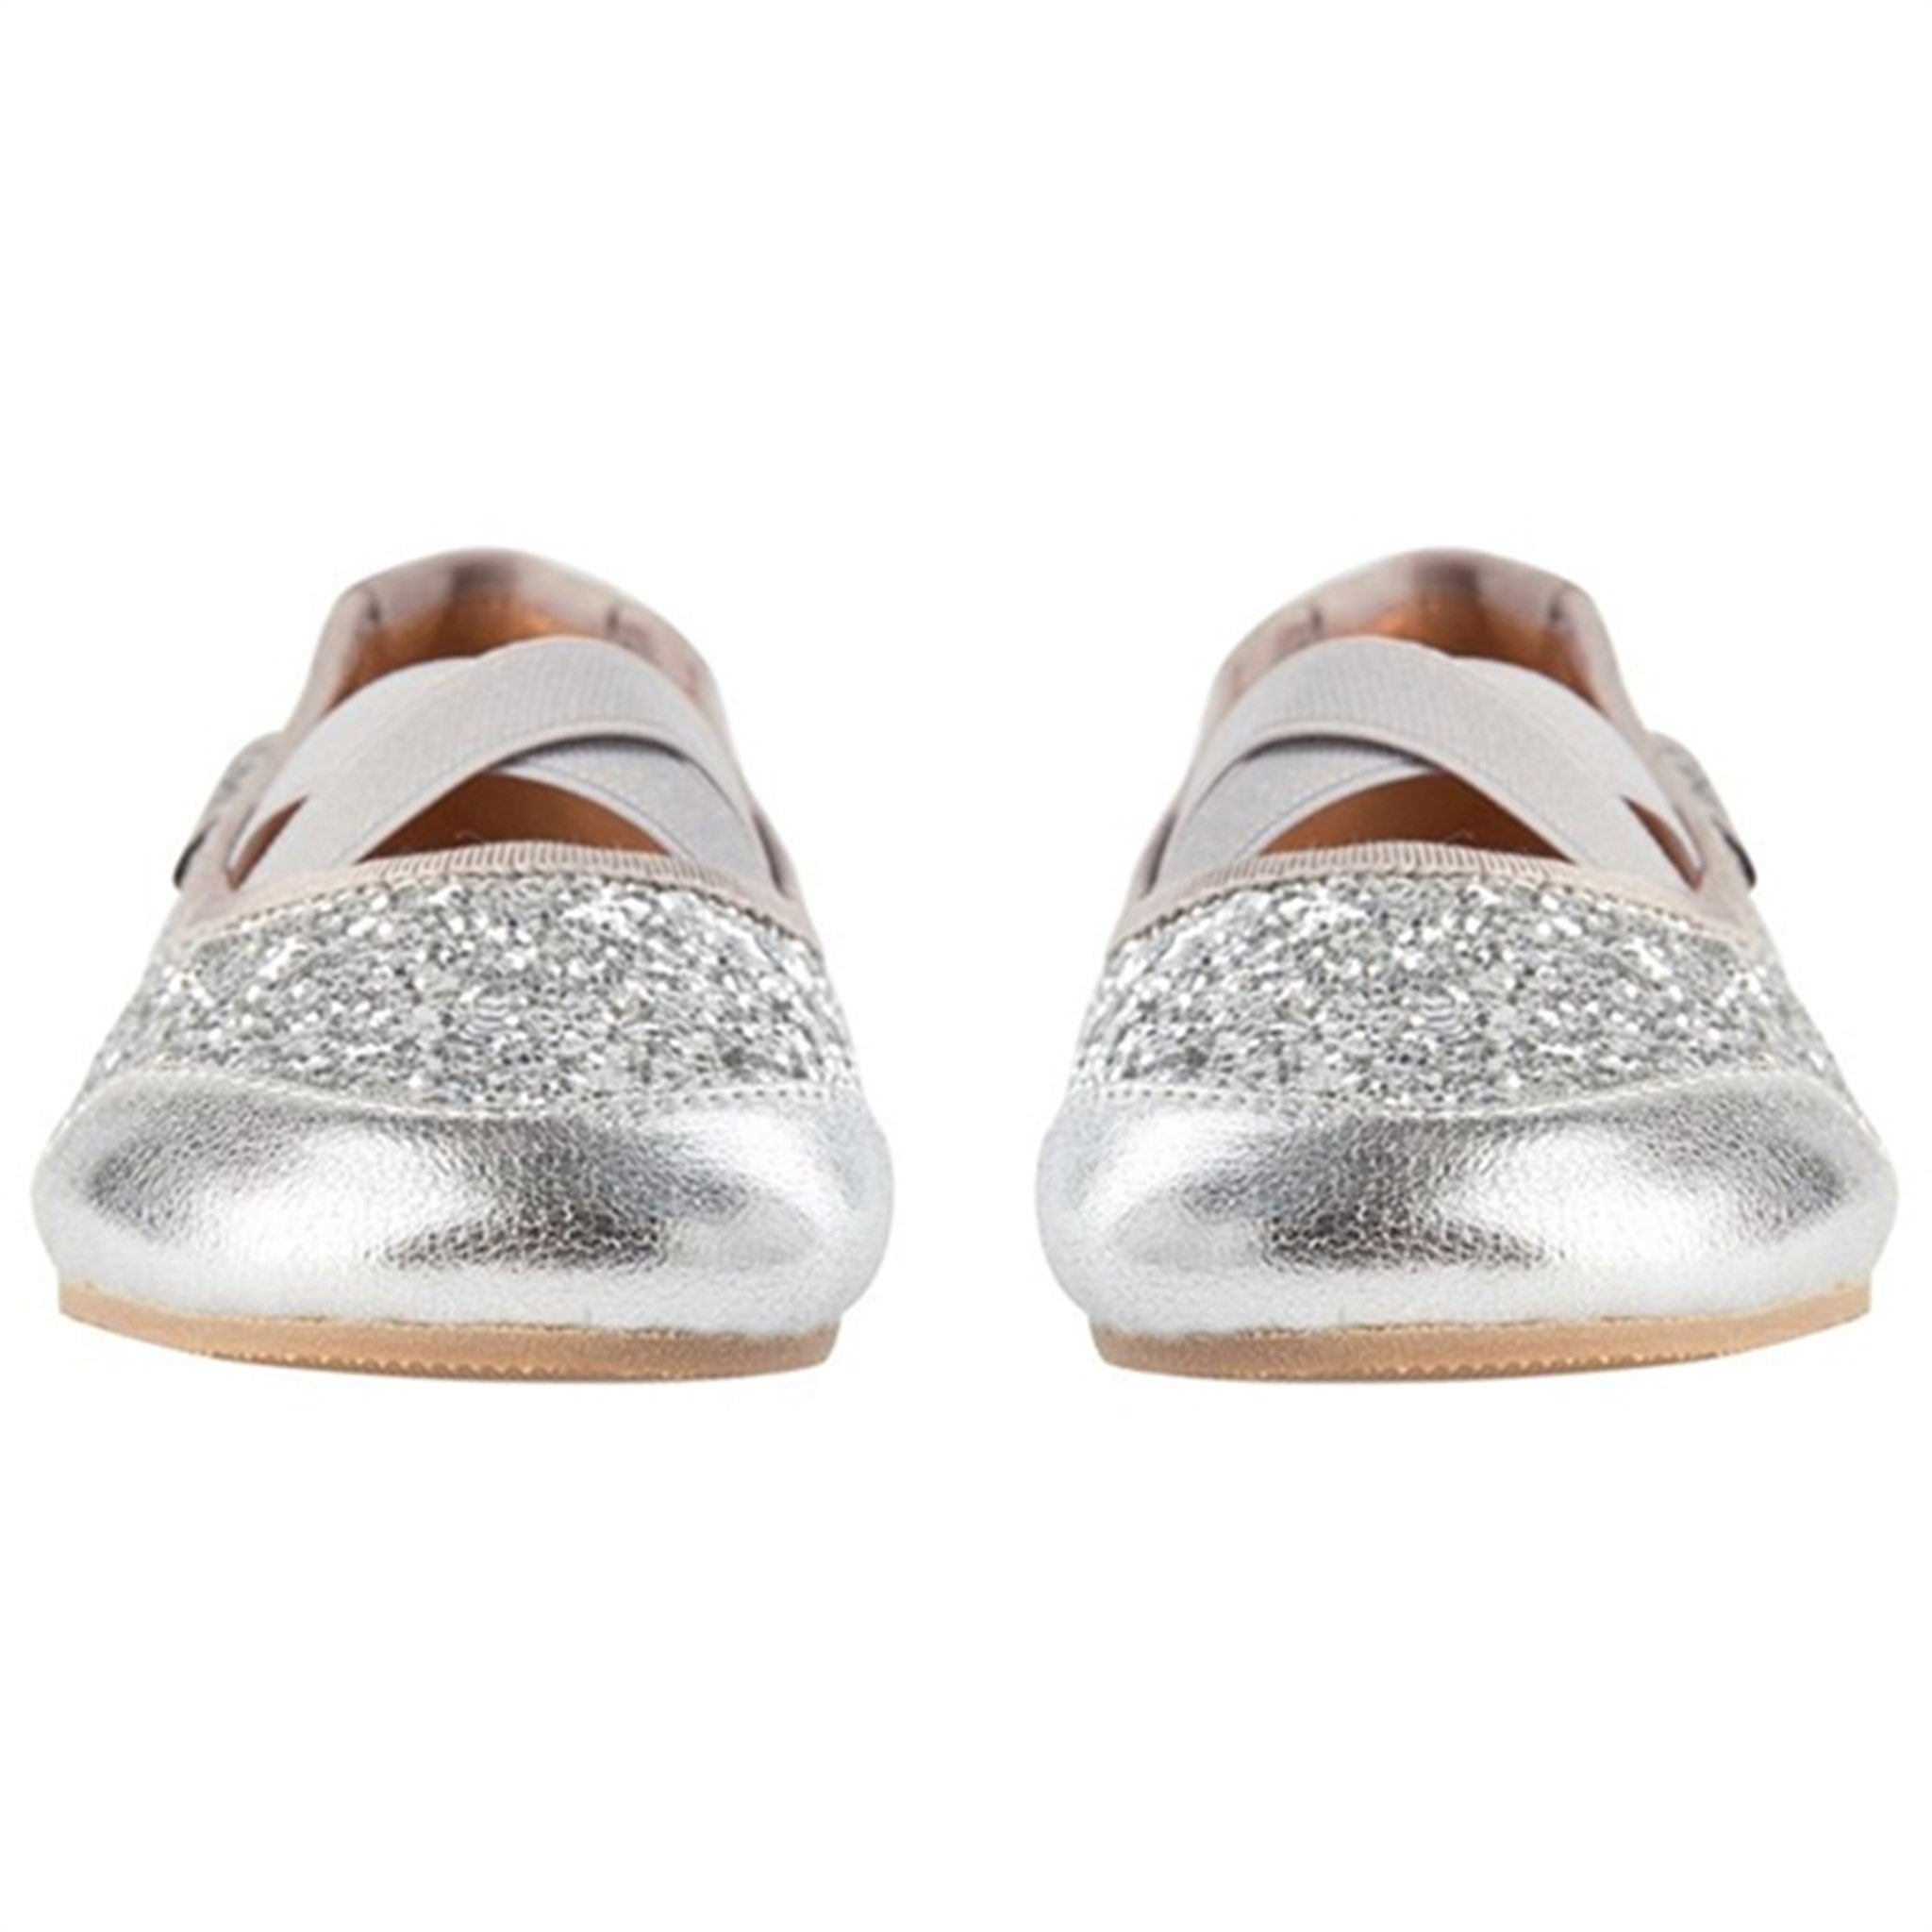 Sofie Schnoor Ballerina Indoors Shoes Silver 7